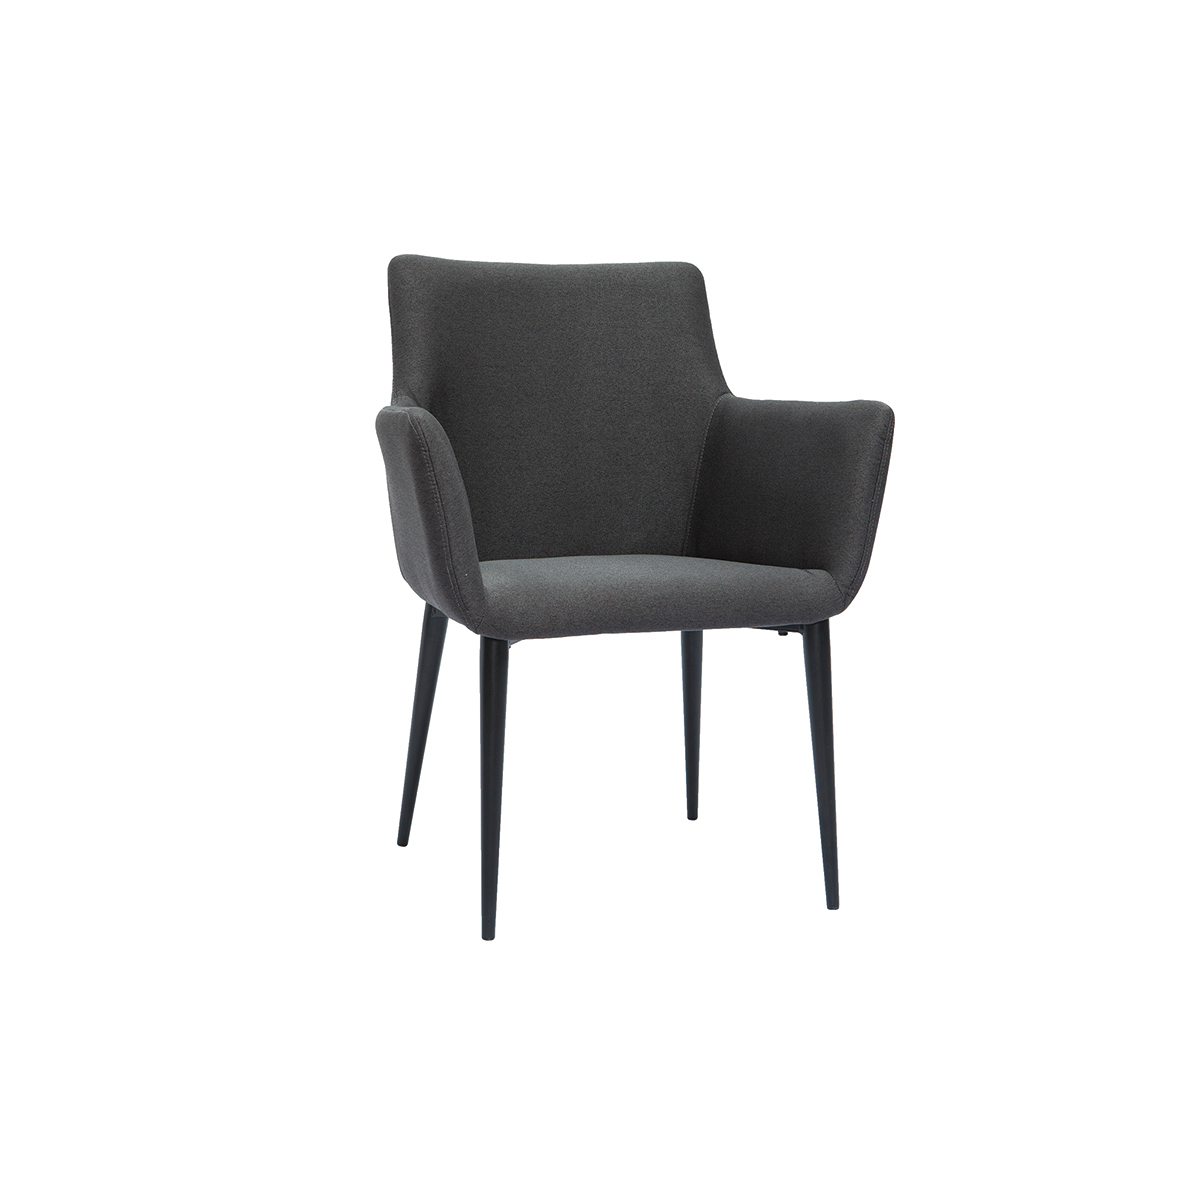 Chaise design en tissu gris anthracite et métal noir CARLIE vue1